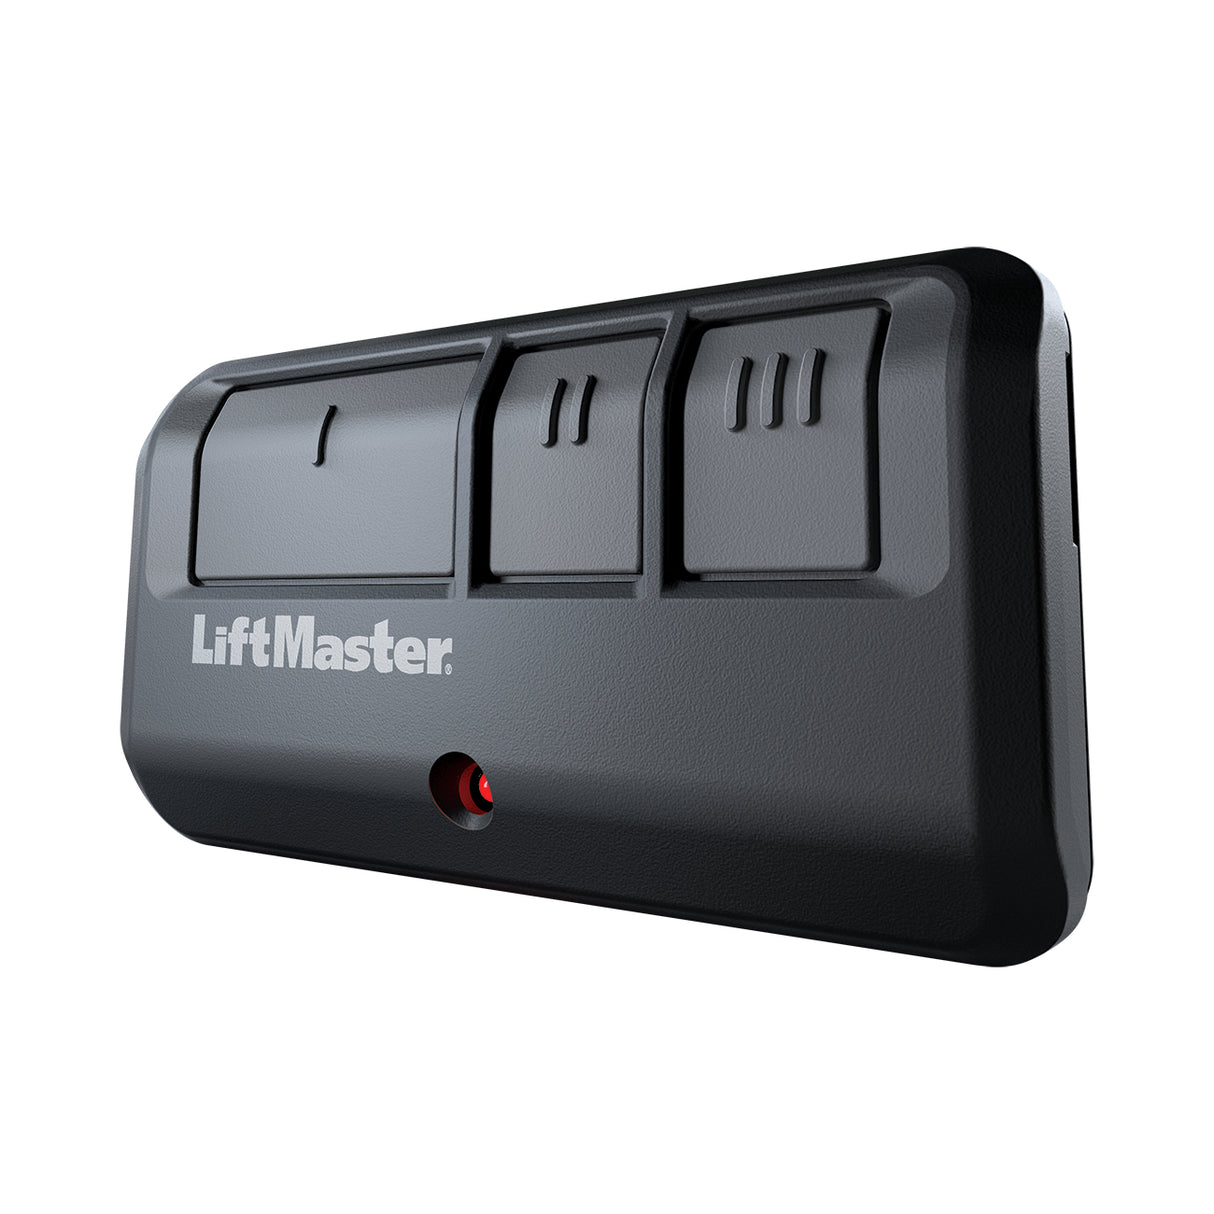 Liftmaster 893max Remote Control